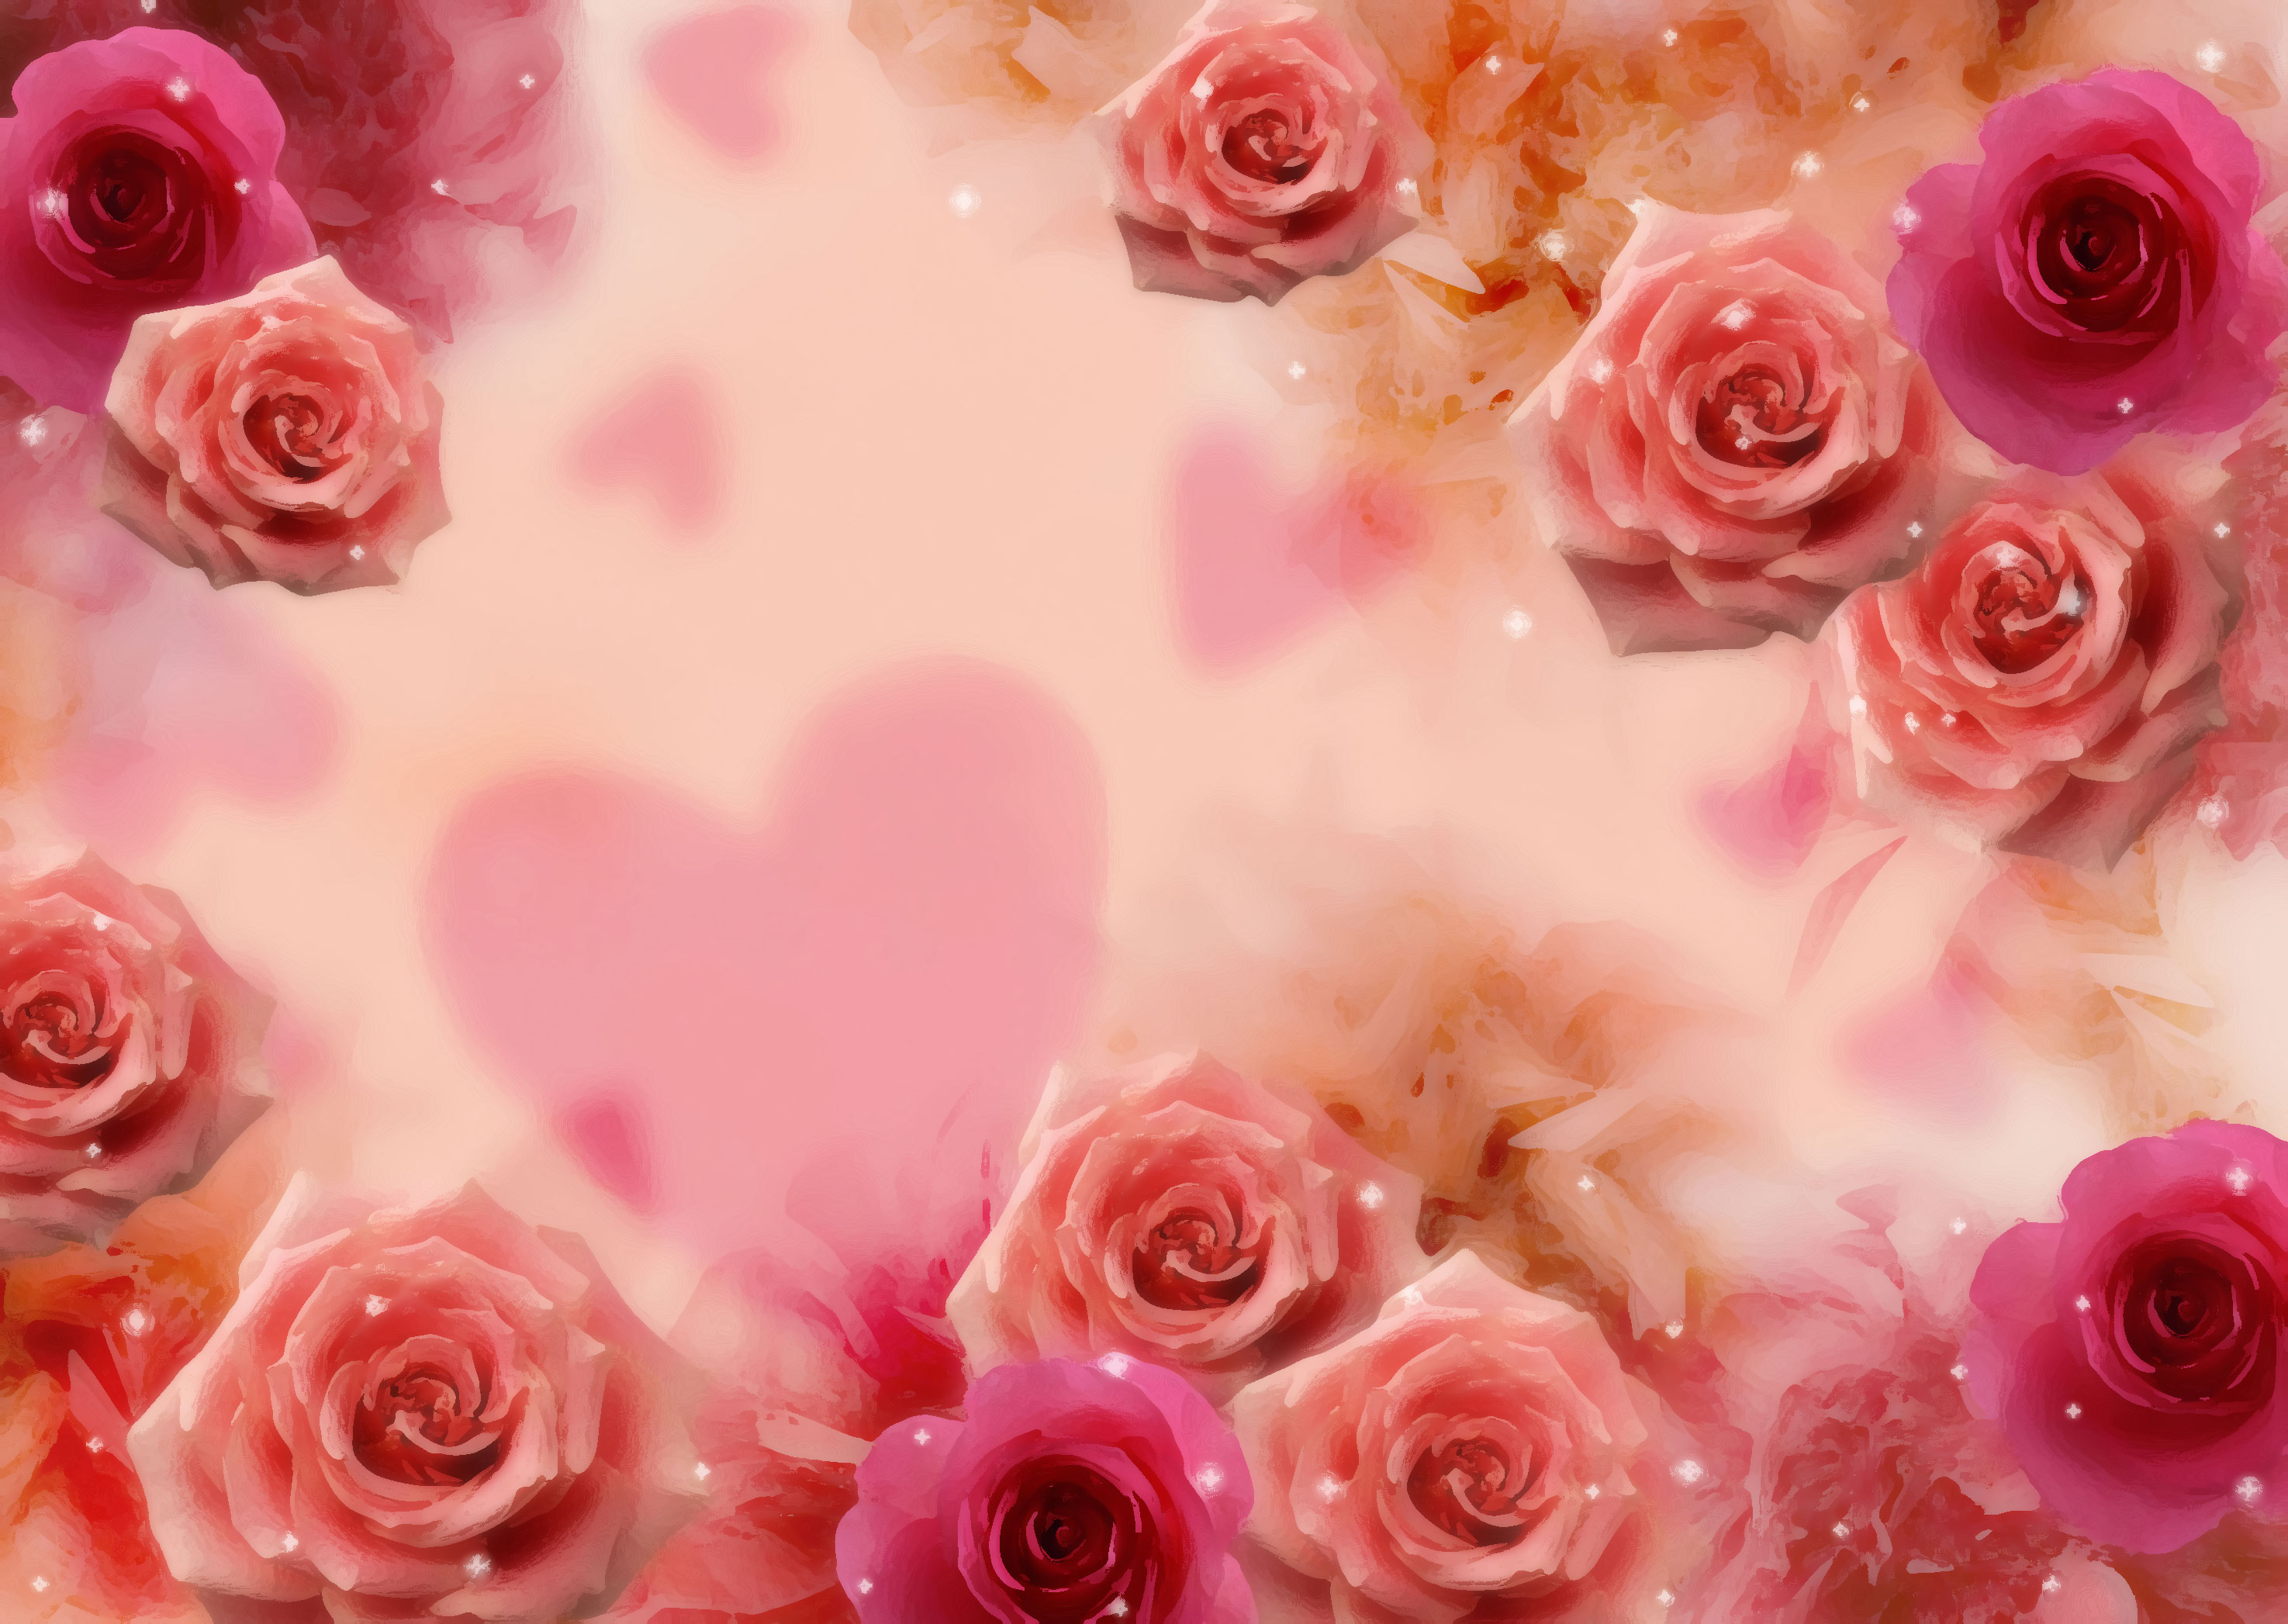 バラの画像 イラスト 壁紙 背景用 No 732 赤ピンクのバラ ハート